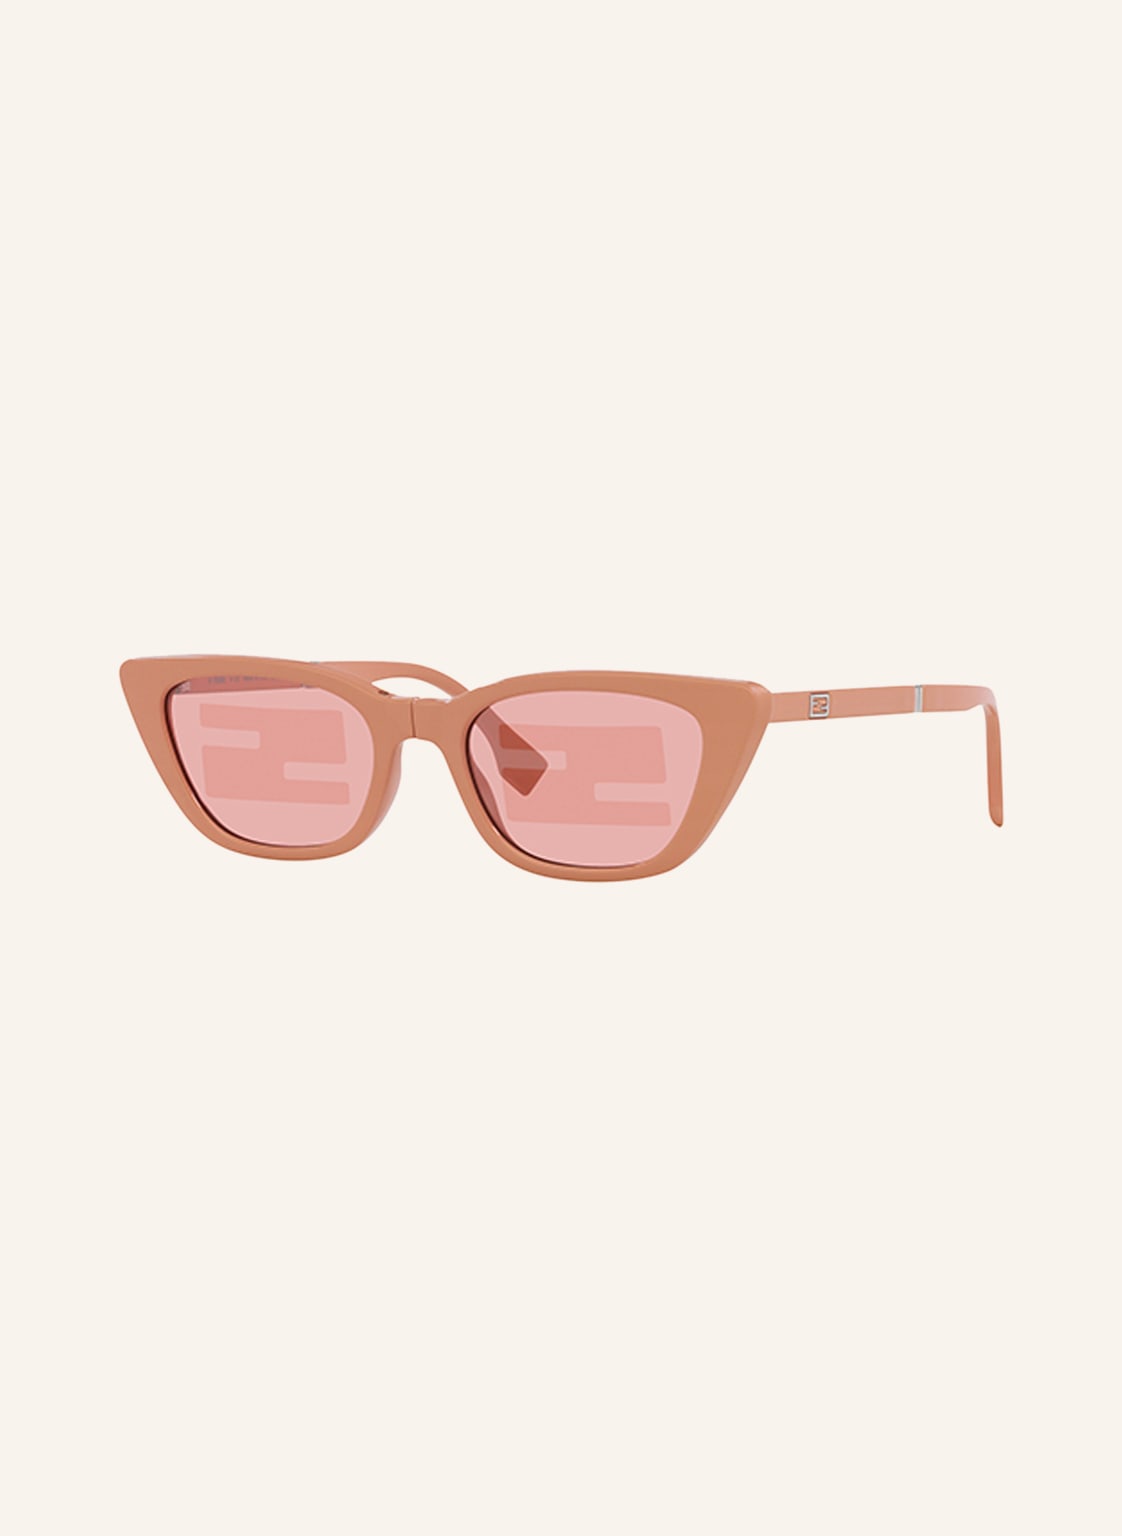 Fendi Okulary Przeciwsłoneczne fn000659 pink